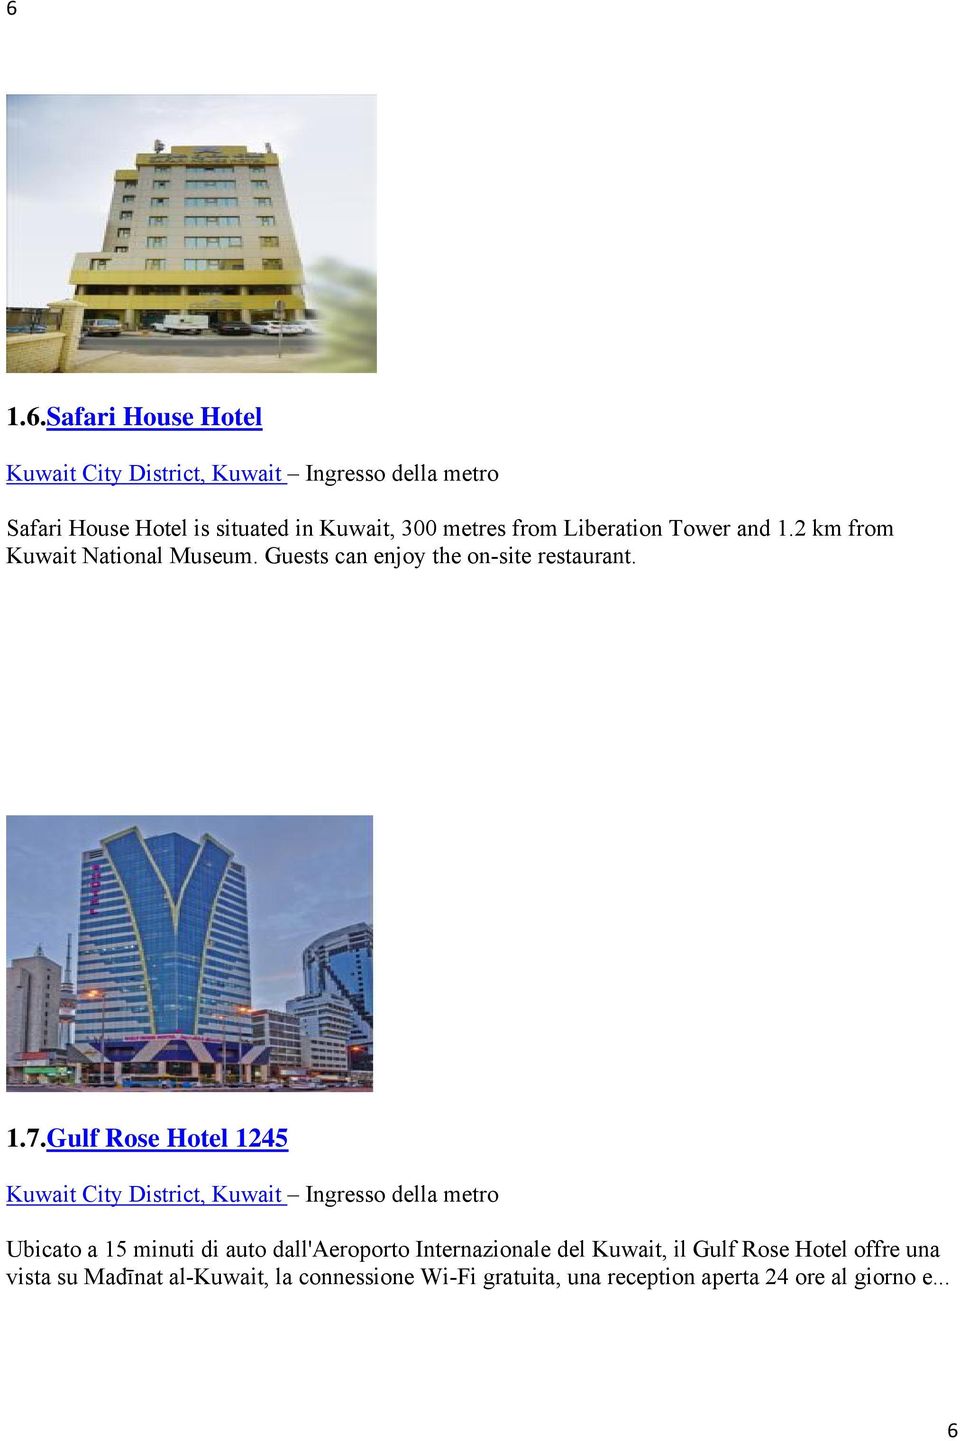 Gulf Rose Hotel 1245 Ubicato a 15 minuti di auto dall'aeroporto Internazionale del Kuwait, il Gulf